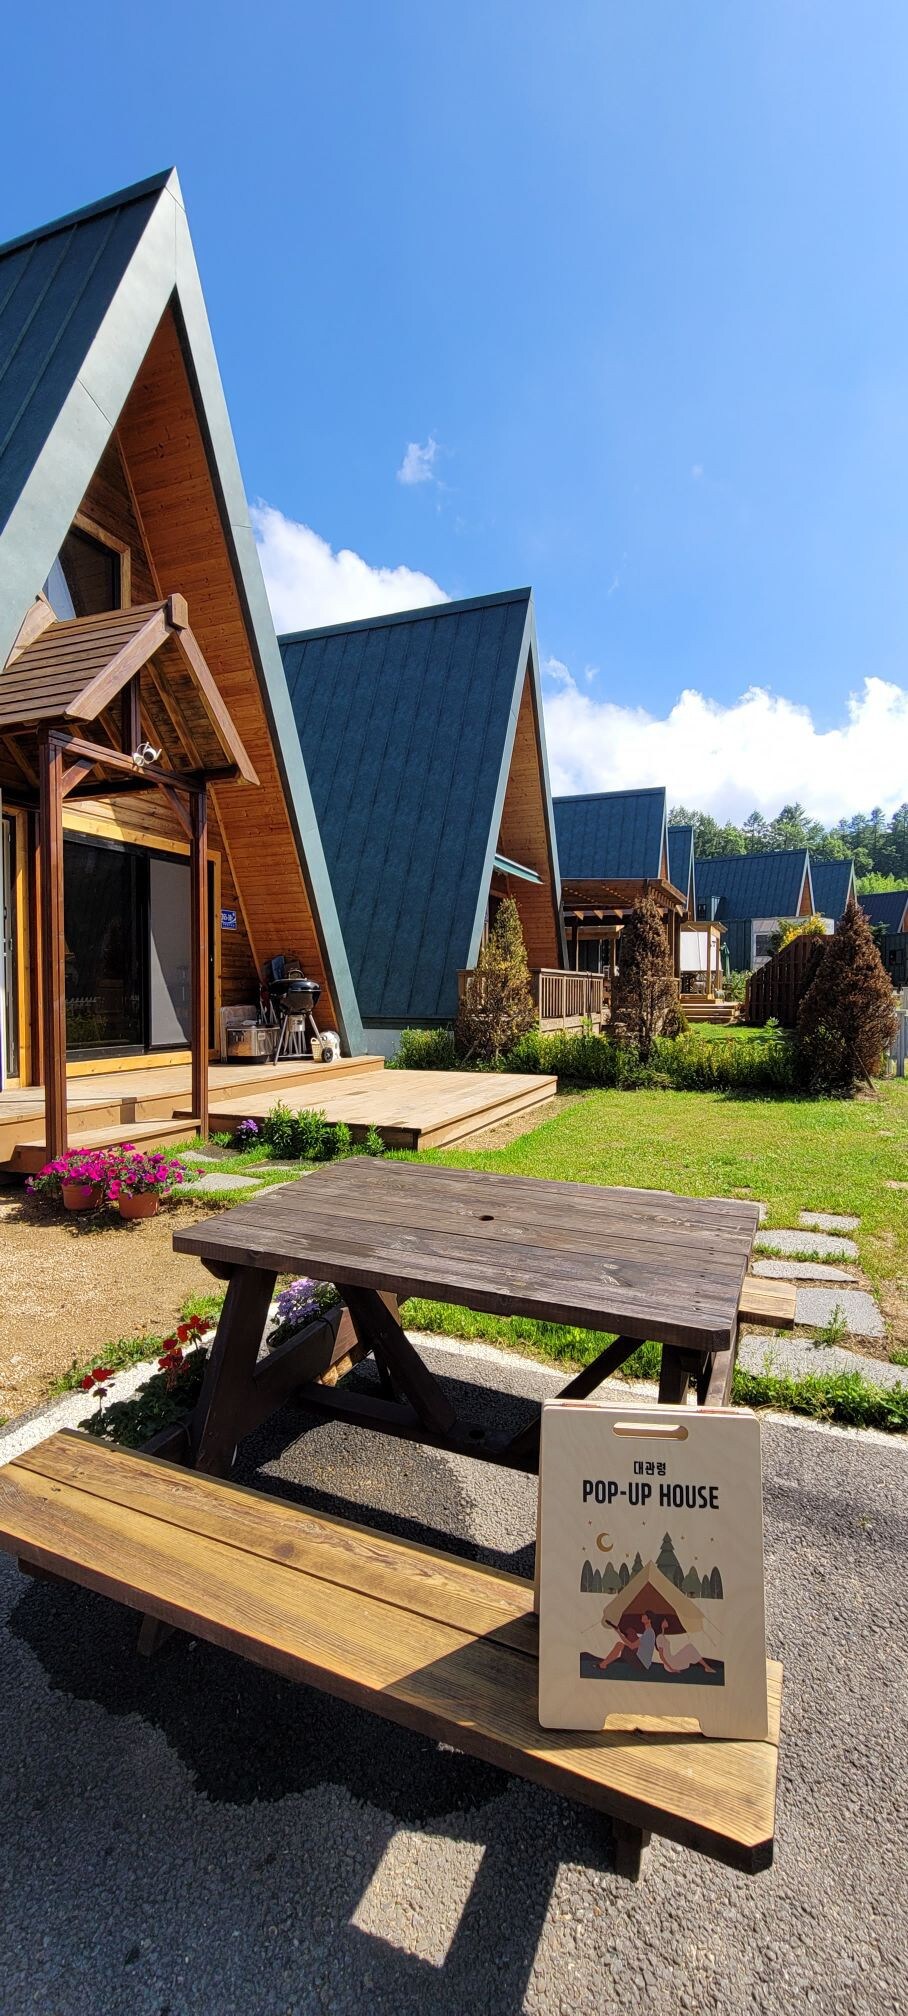 在韩国瑞士村庄Daegwallyeong Pop-Up House与房东一起体验各种民宿